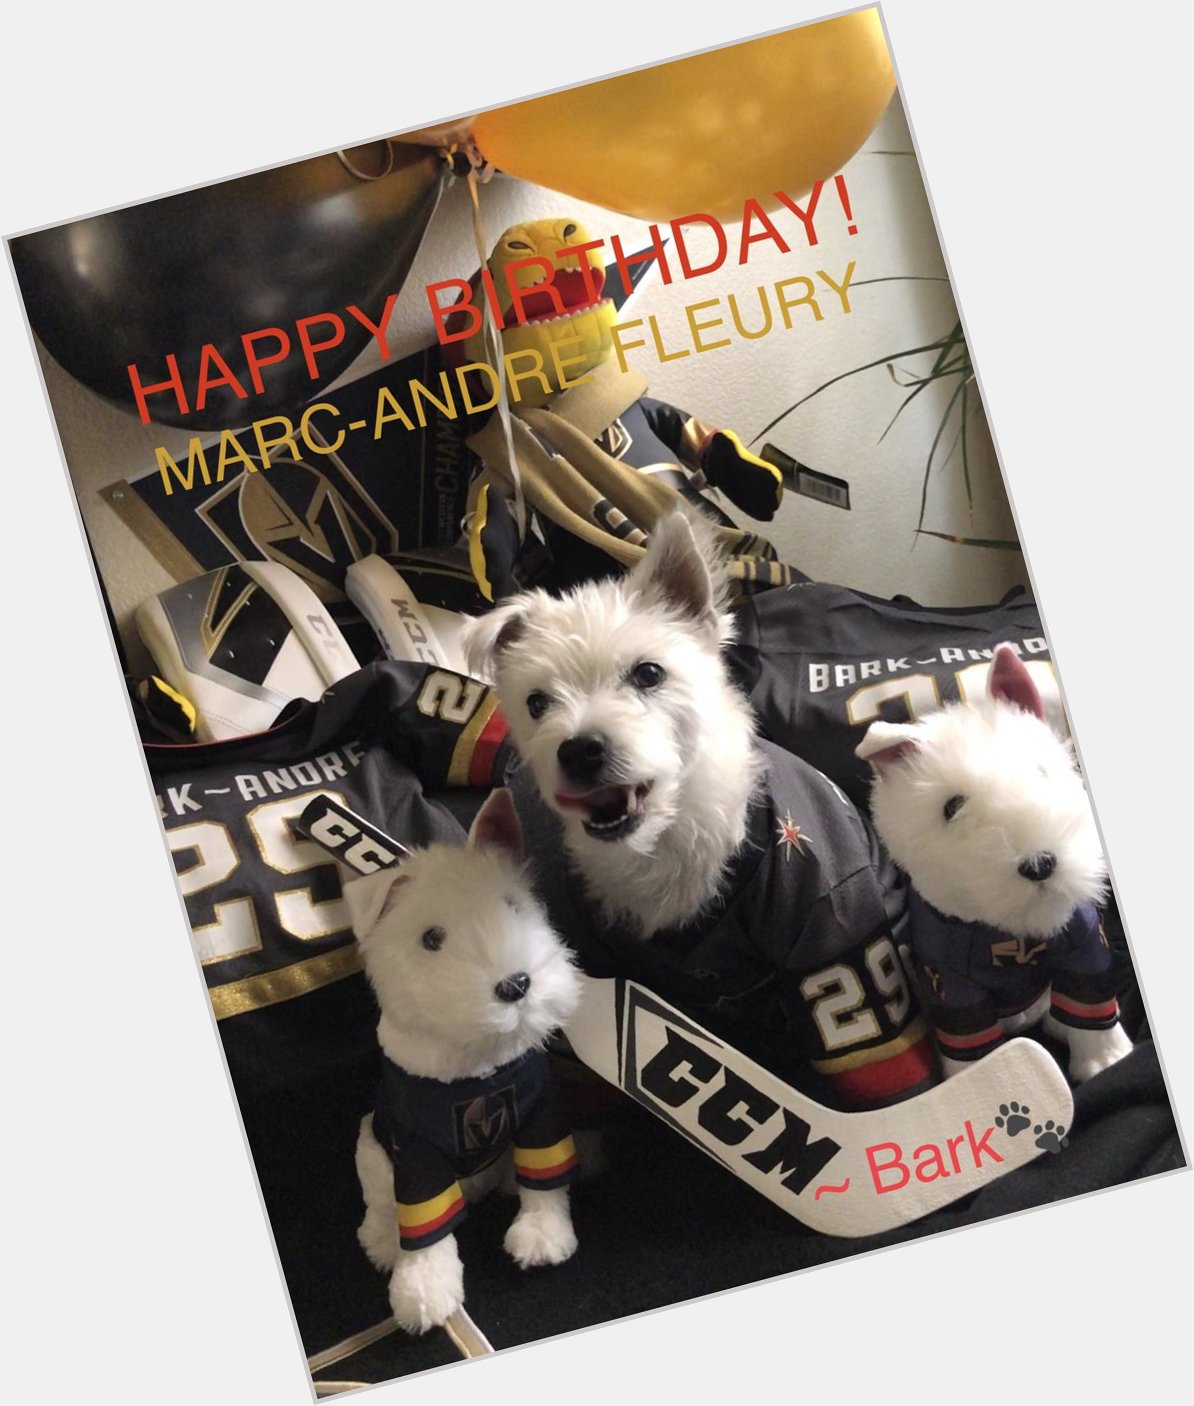 HAPPY BIRTHDAY  MARC-ANDRÉ FLEURY!
~ Bark       